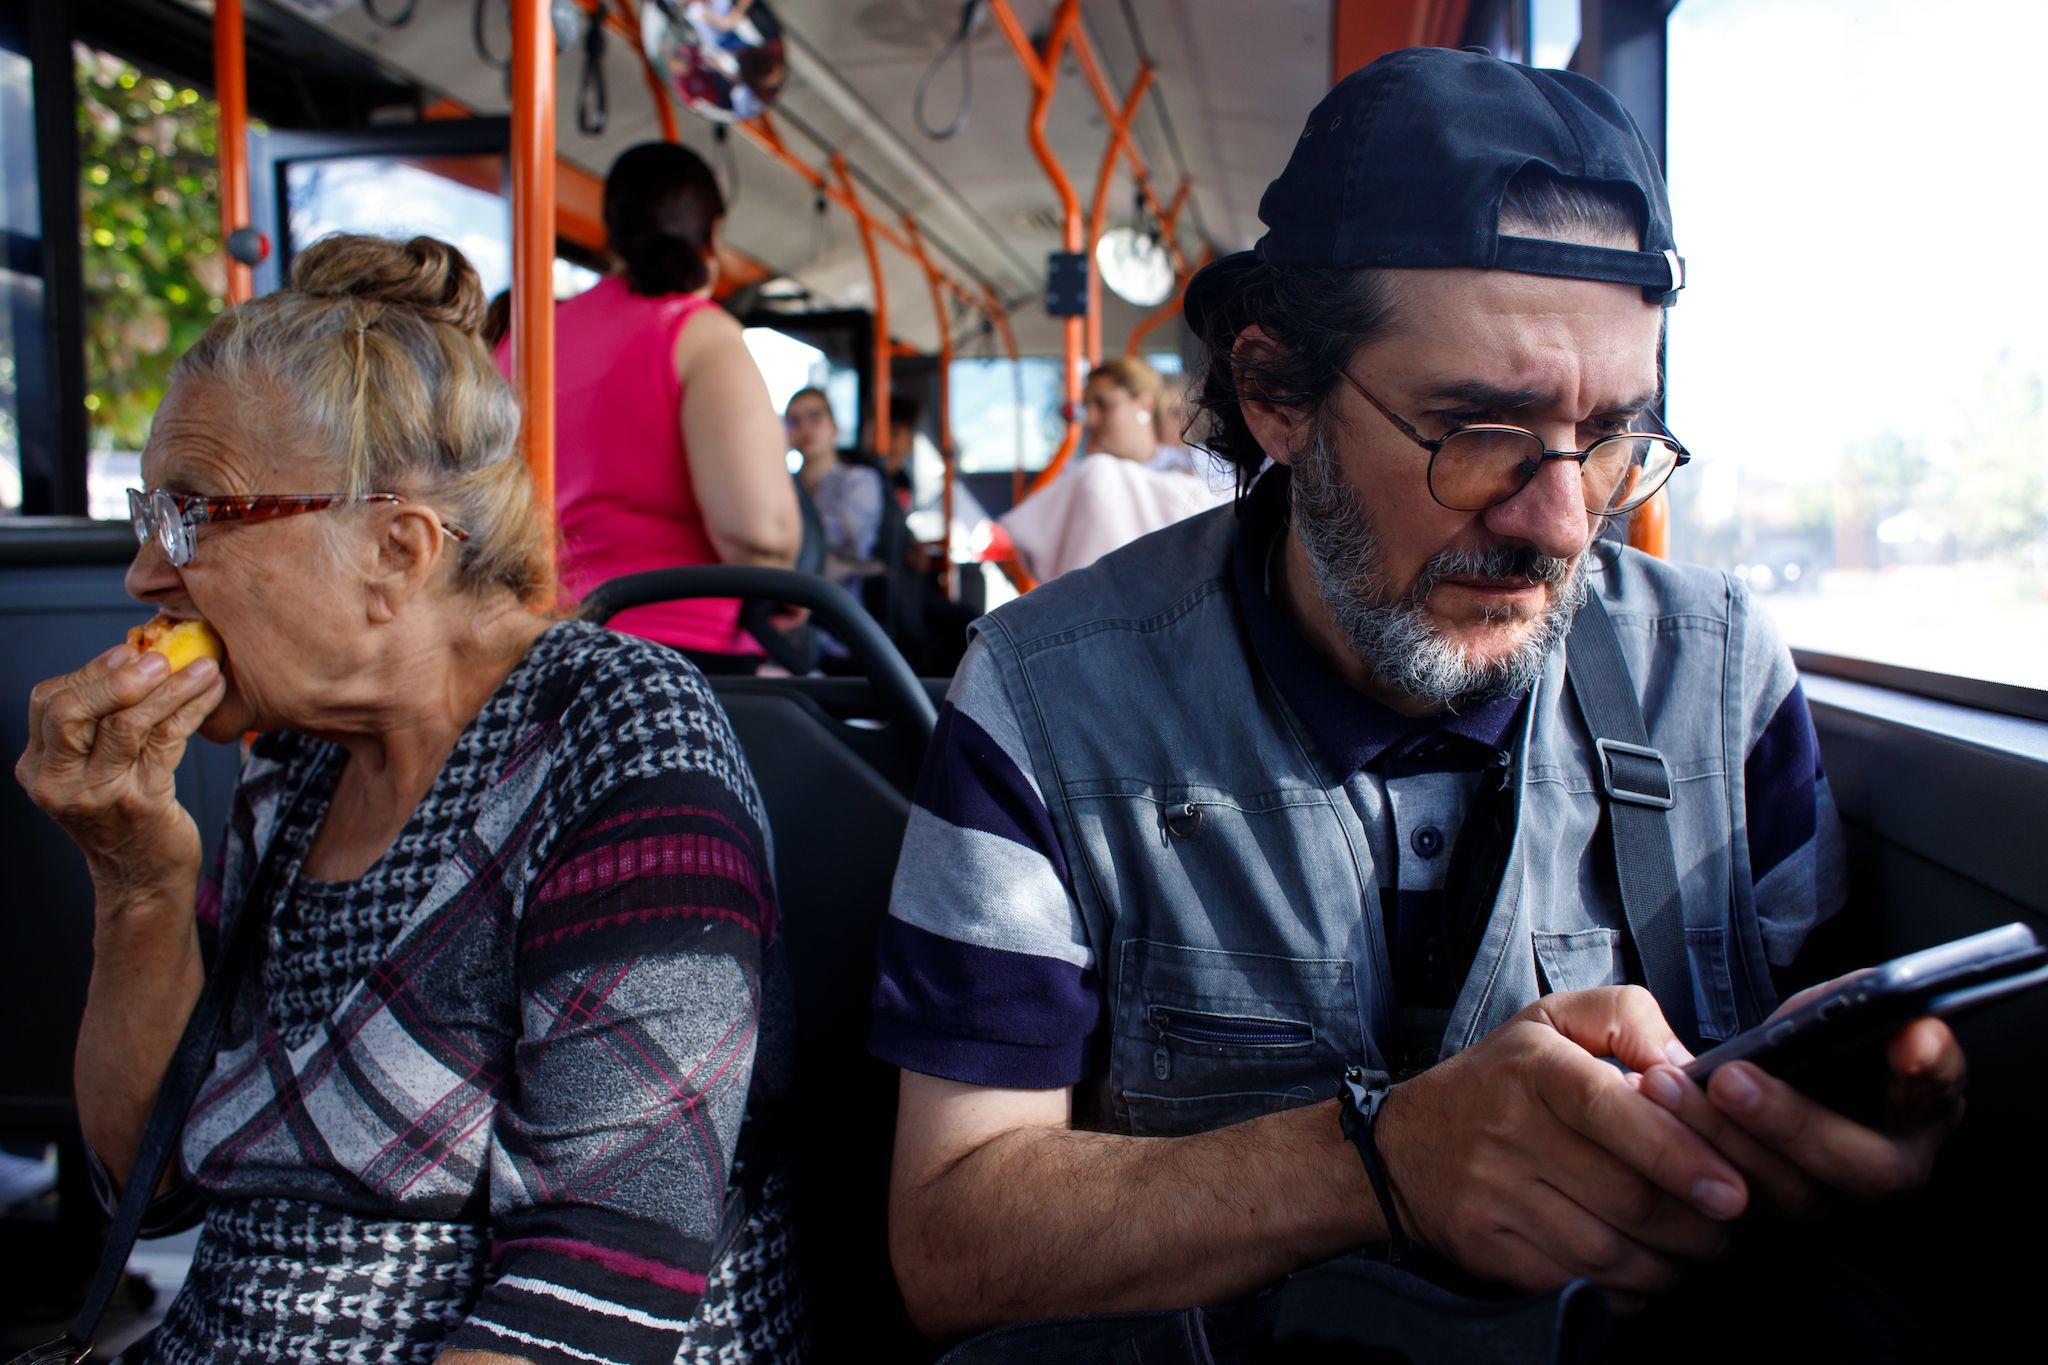 Bogdan în autobuz, București, septembrie 2022. Foto: Toma Hurduc